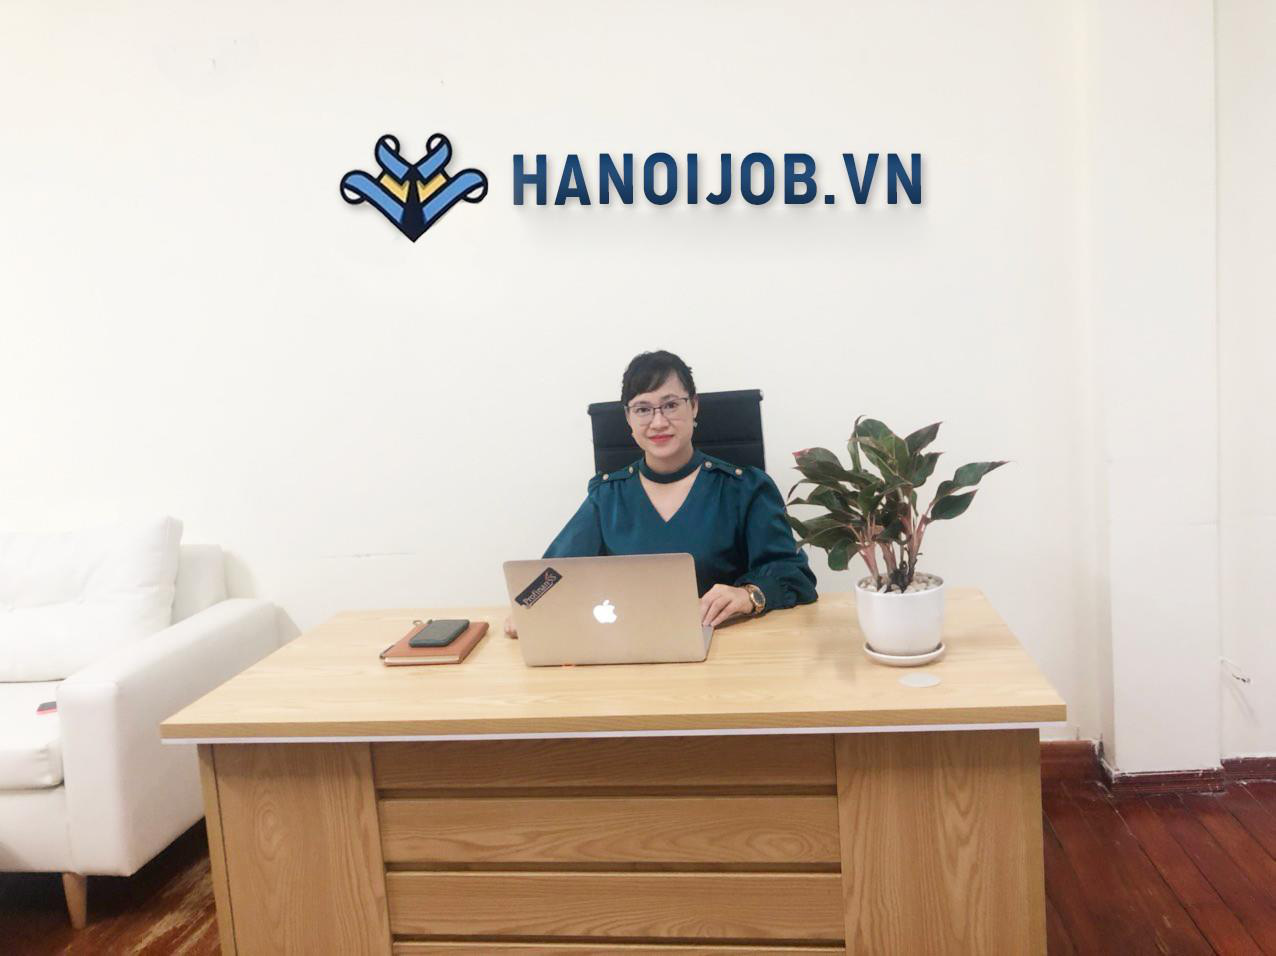 Bí quyết tìm việc ở làm Hà Nội trong mùa dịch với Hanoijob.vn - Ảnh 1.